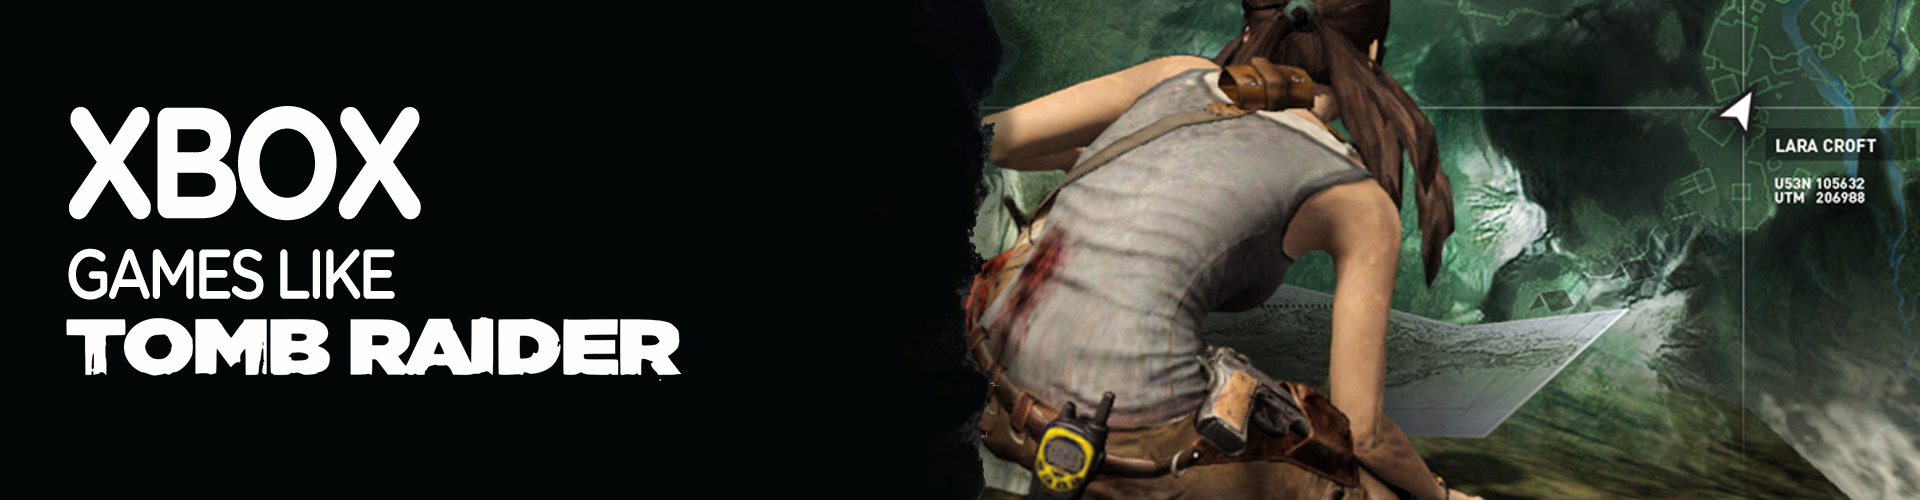 Los Mejores Juegos Como Tomb Raider en Xbox